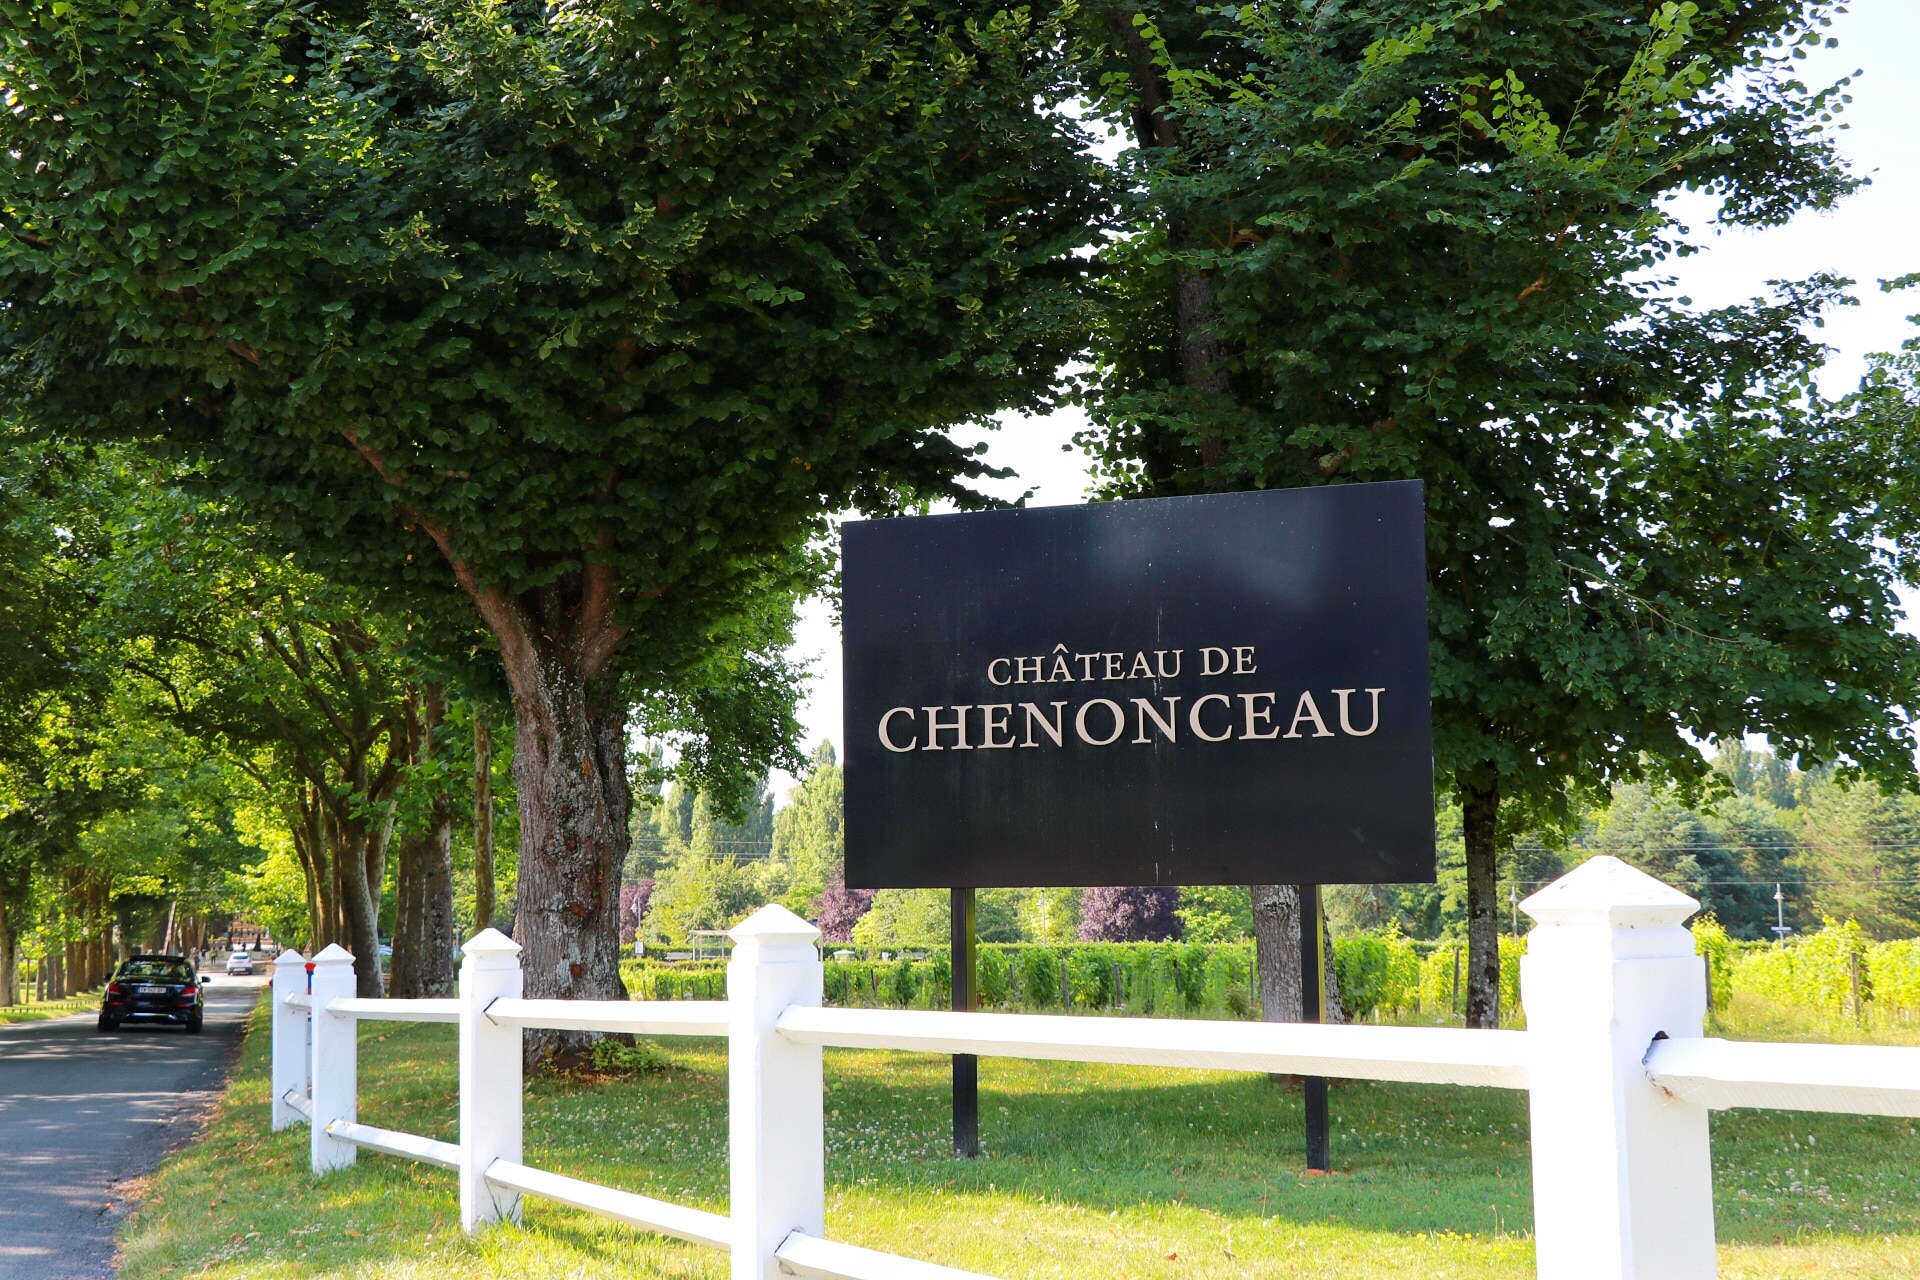 Scenic Chateaux Loire Valley road trip: Château de Chenonceau